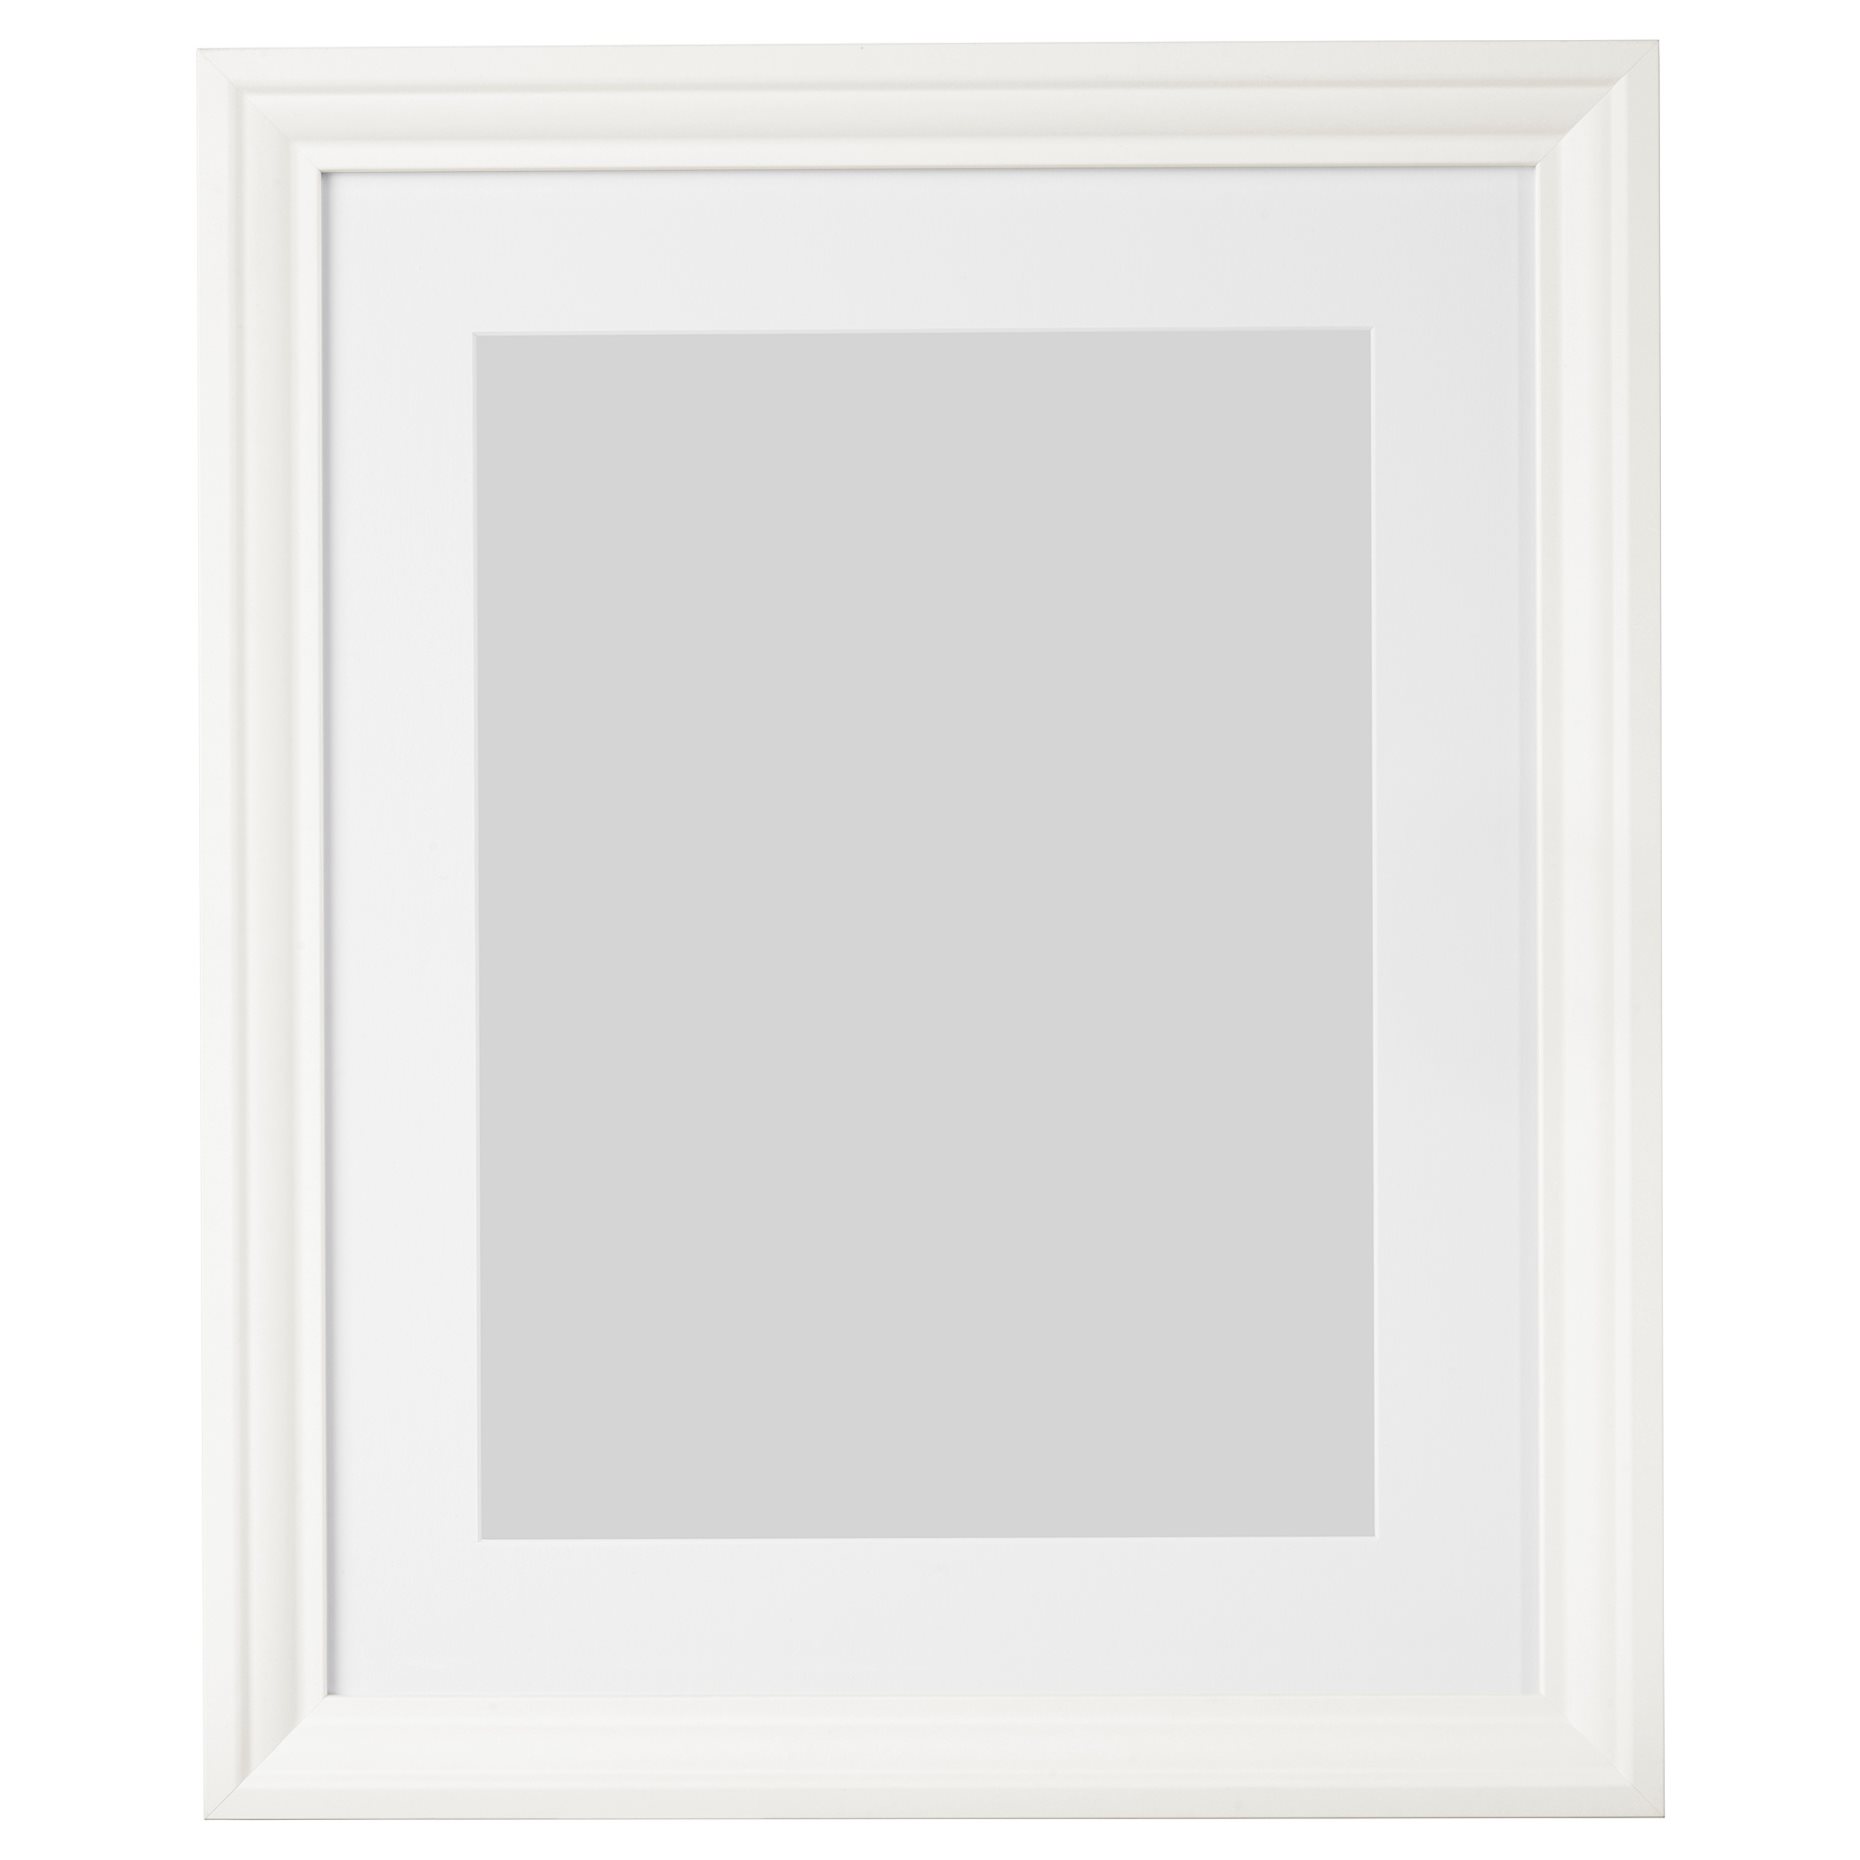 EDSBRUK, frame, 40x50 cm, 404.273.26